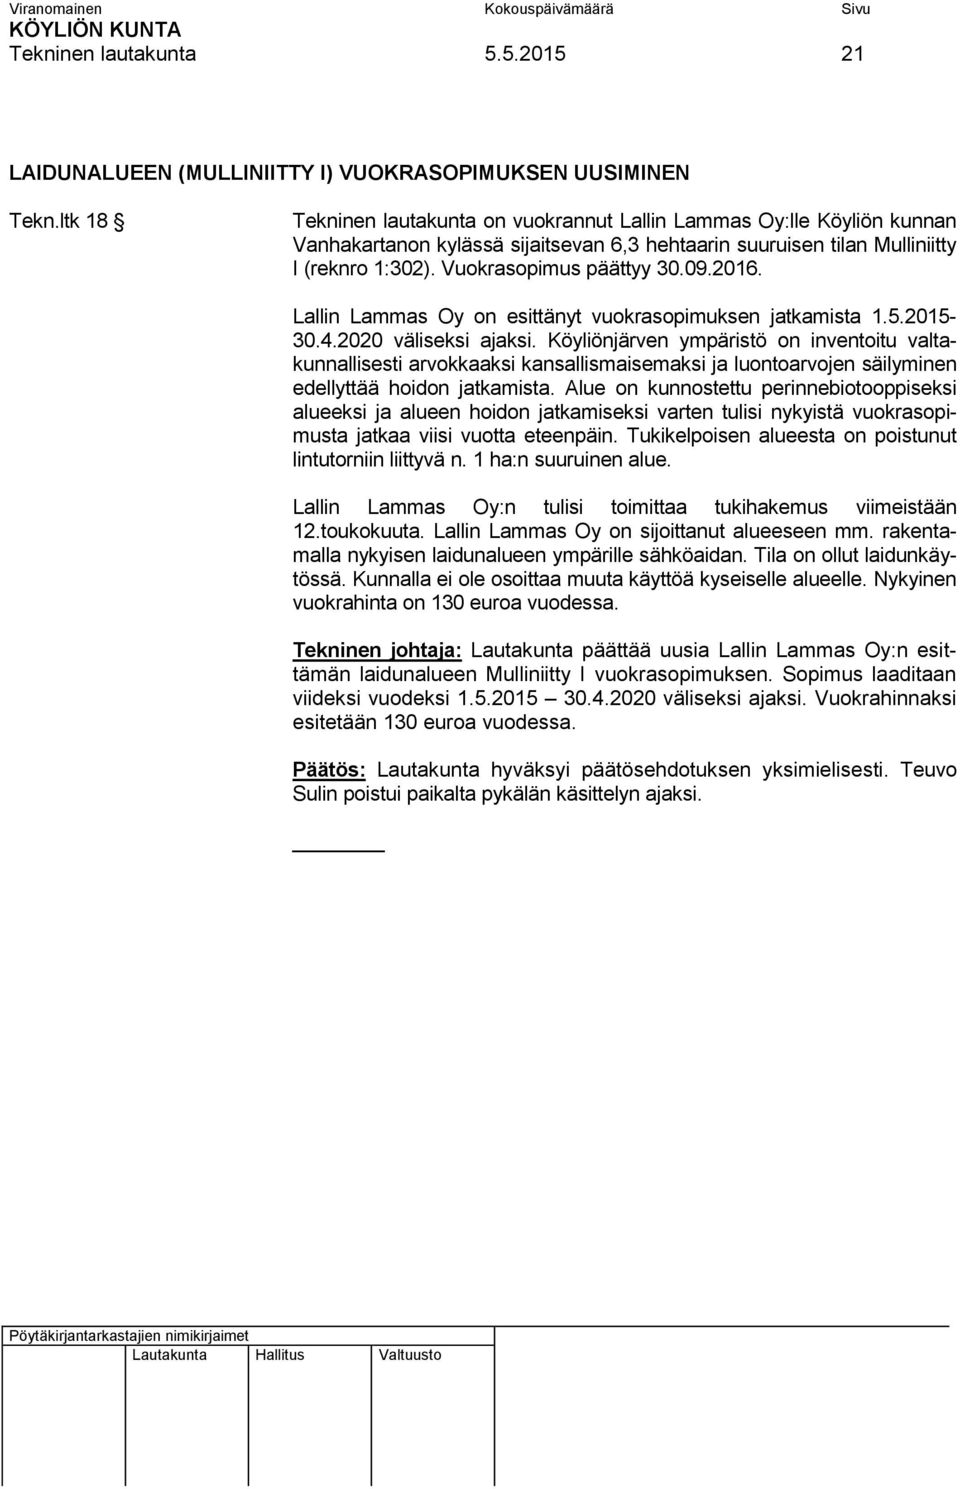 2016. Lallin Lammas Oy on esittänyt vuokrasopimuksen jatkamista 1.5.2015-30.4.2020 väliseksi ajaksi.